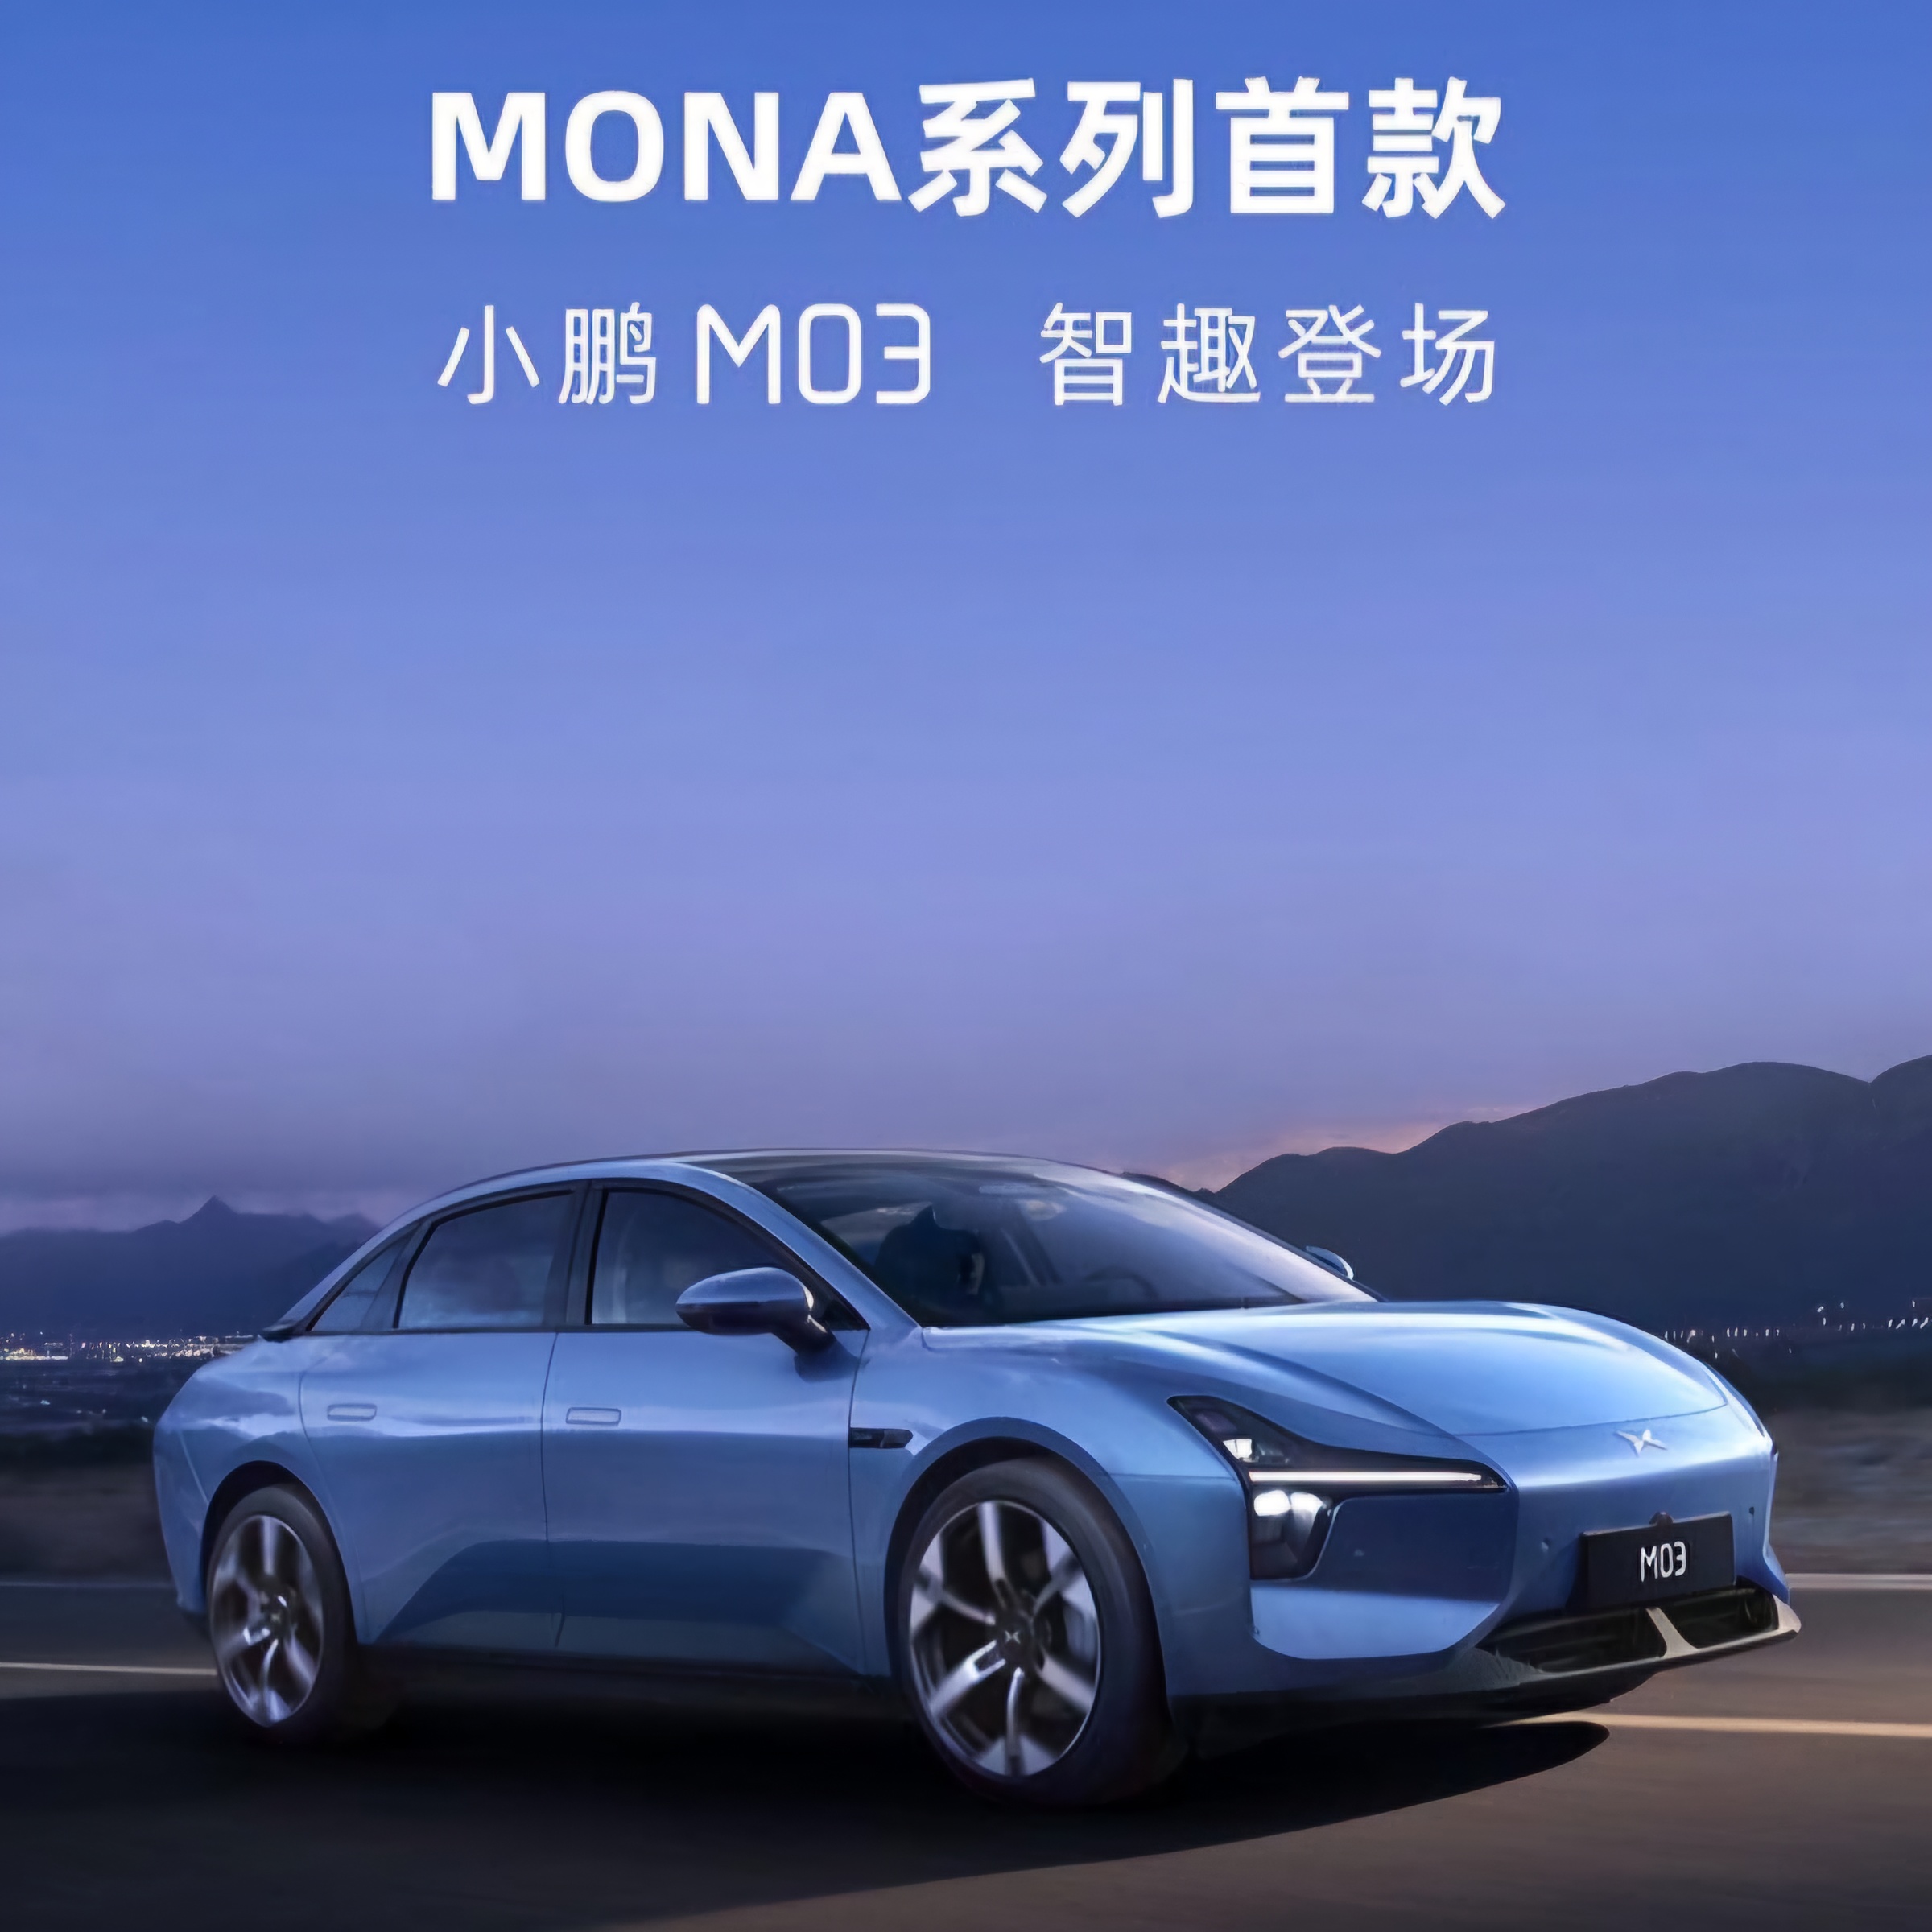 XPeng раскрывает официальное изображение Mona M03